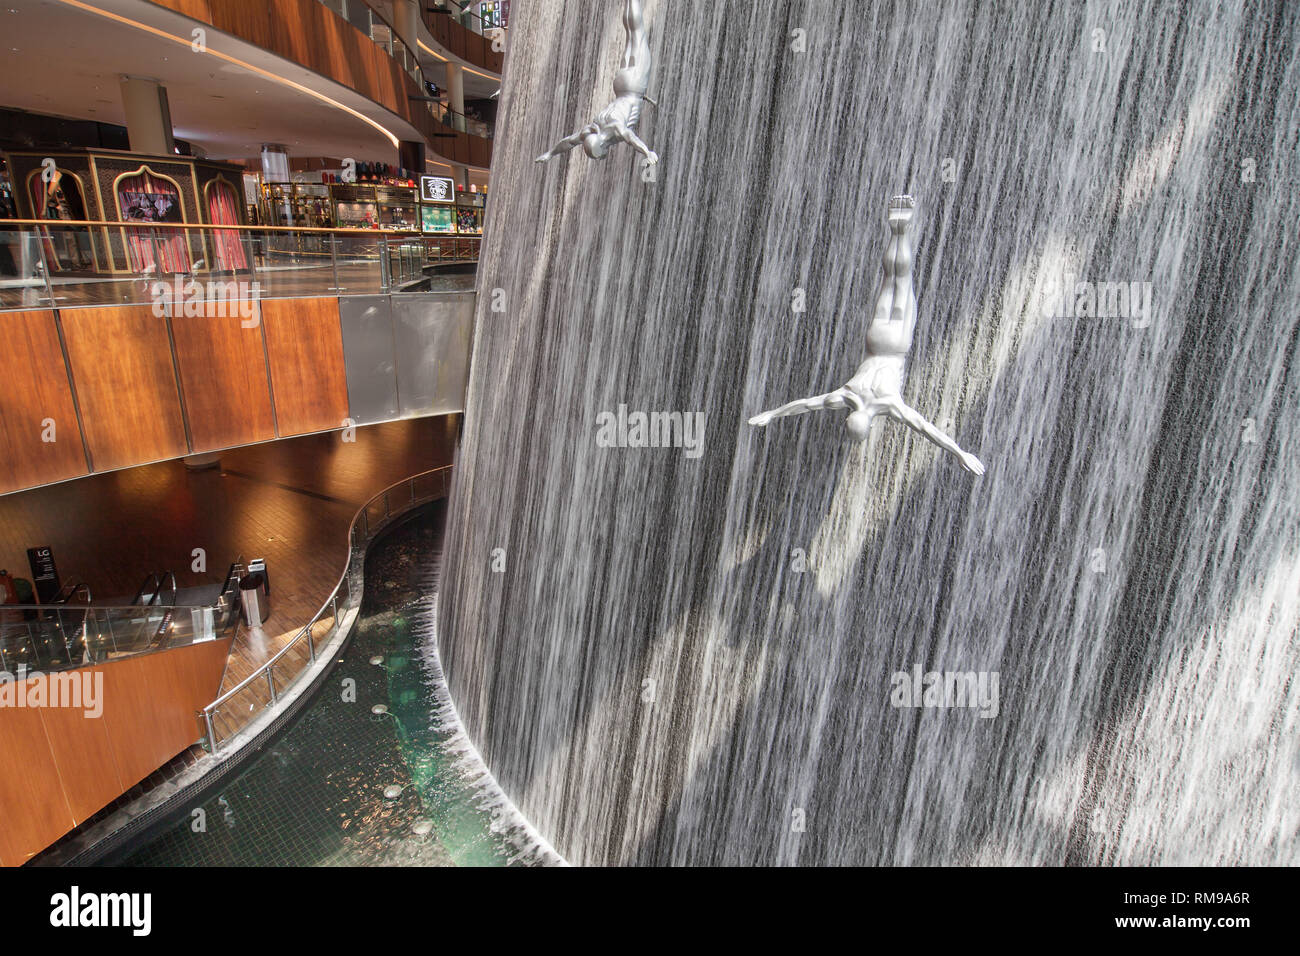 Dubai, United Arab Emirates - September 9, 2018: The Waterfall at Dubai Mall, Dubai, United Arab Emirates. Stock Photo